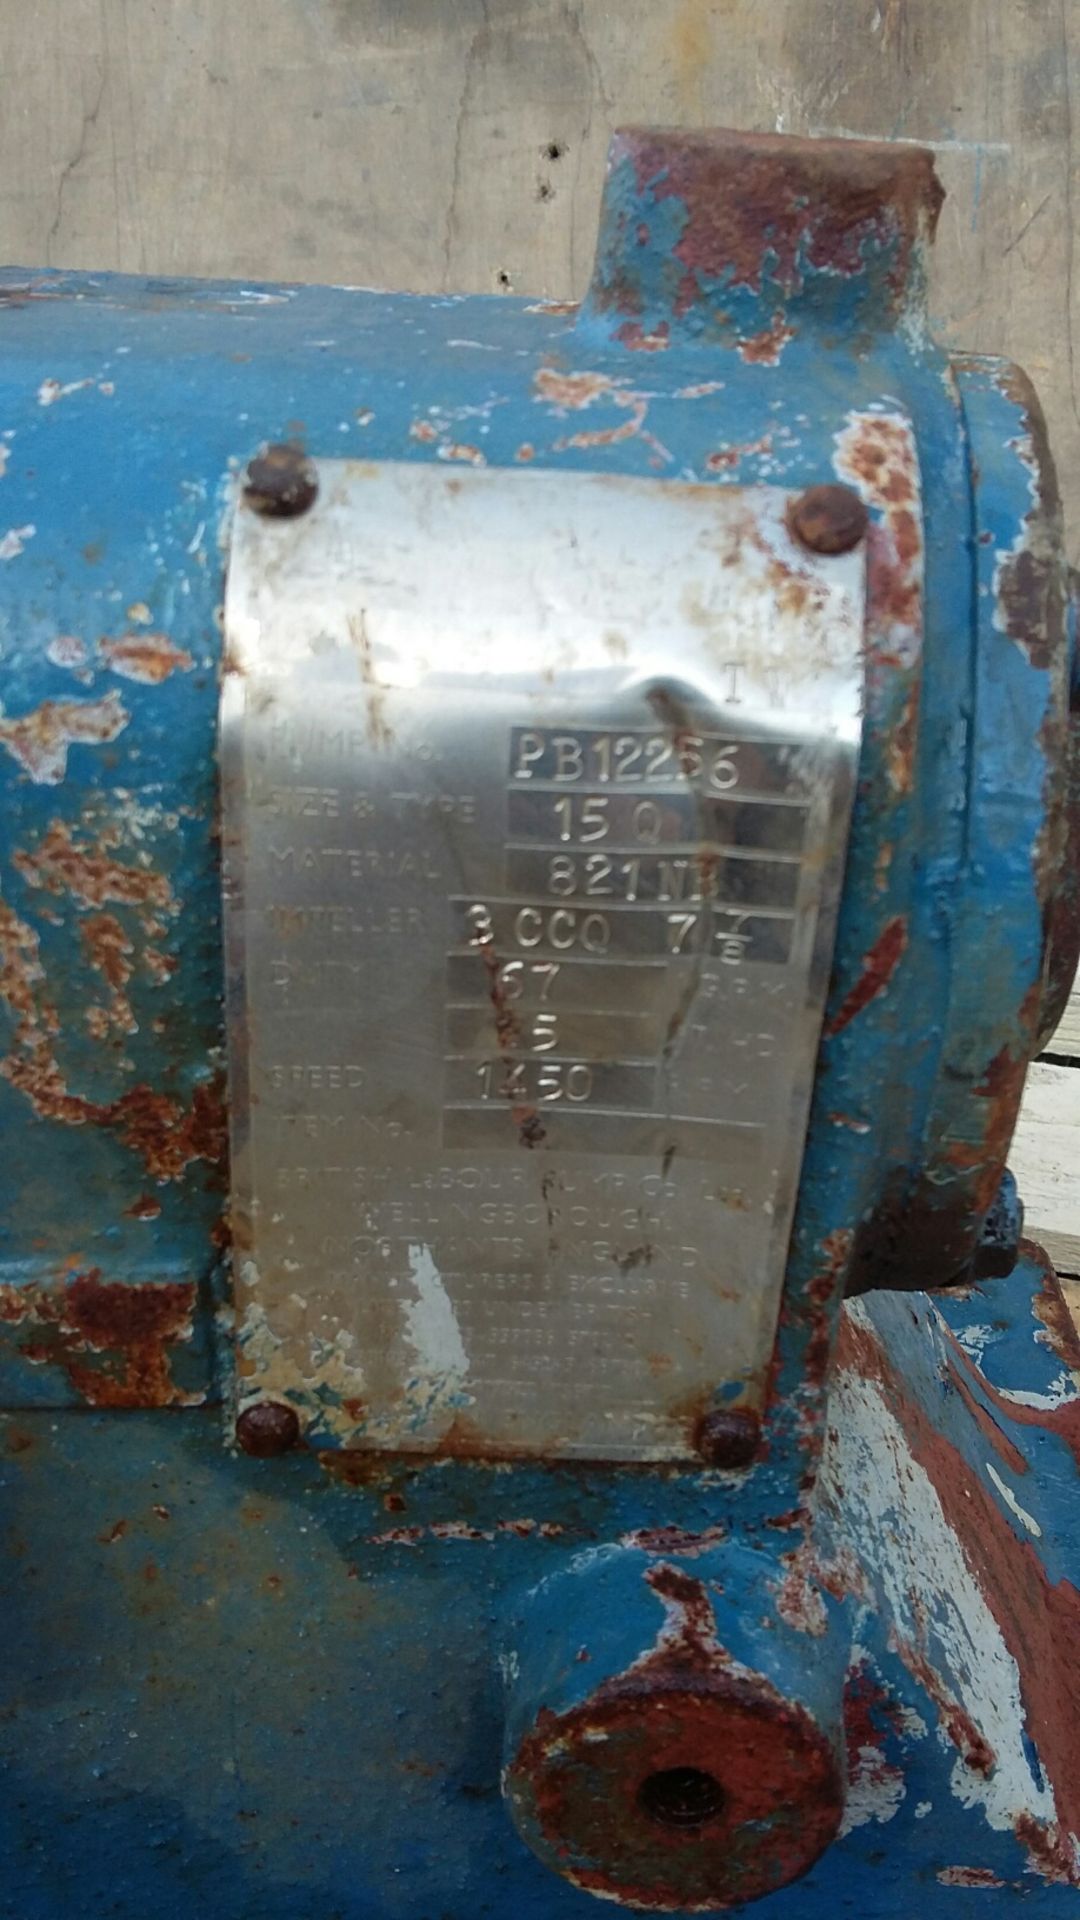 Labour 15Q Stainless Steel Slurry Pump, with mech - Bild 3 aus 3